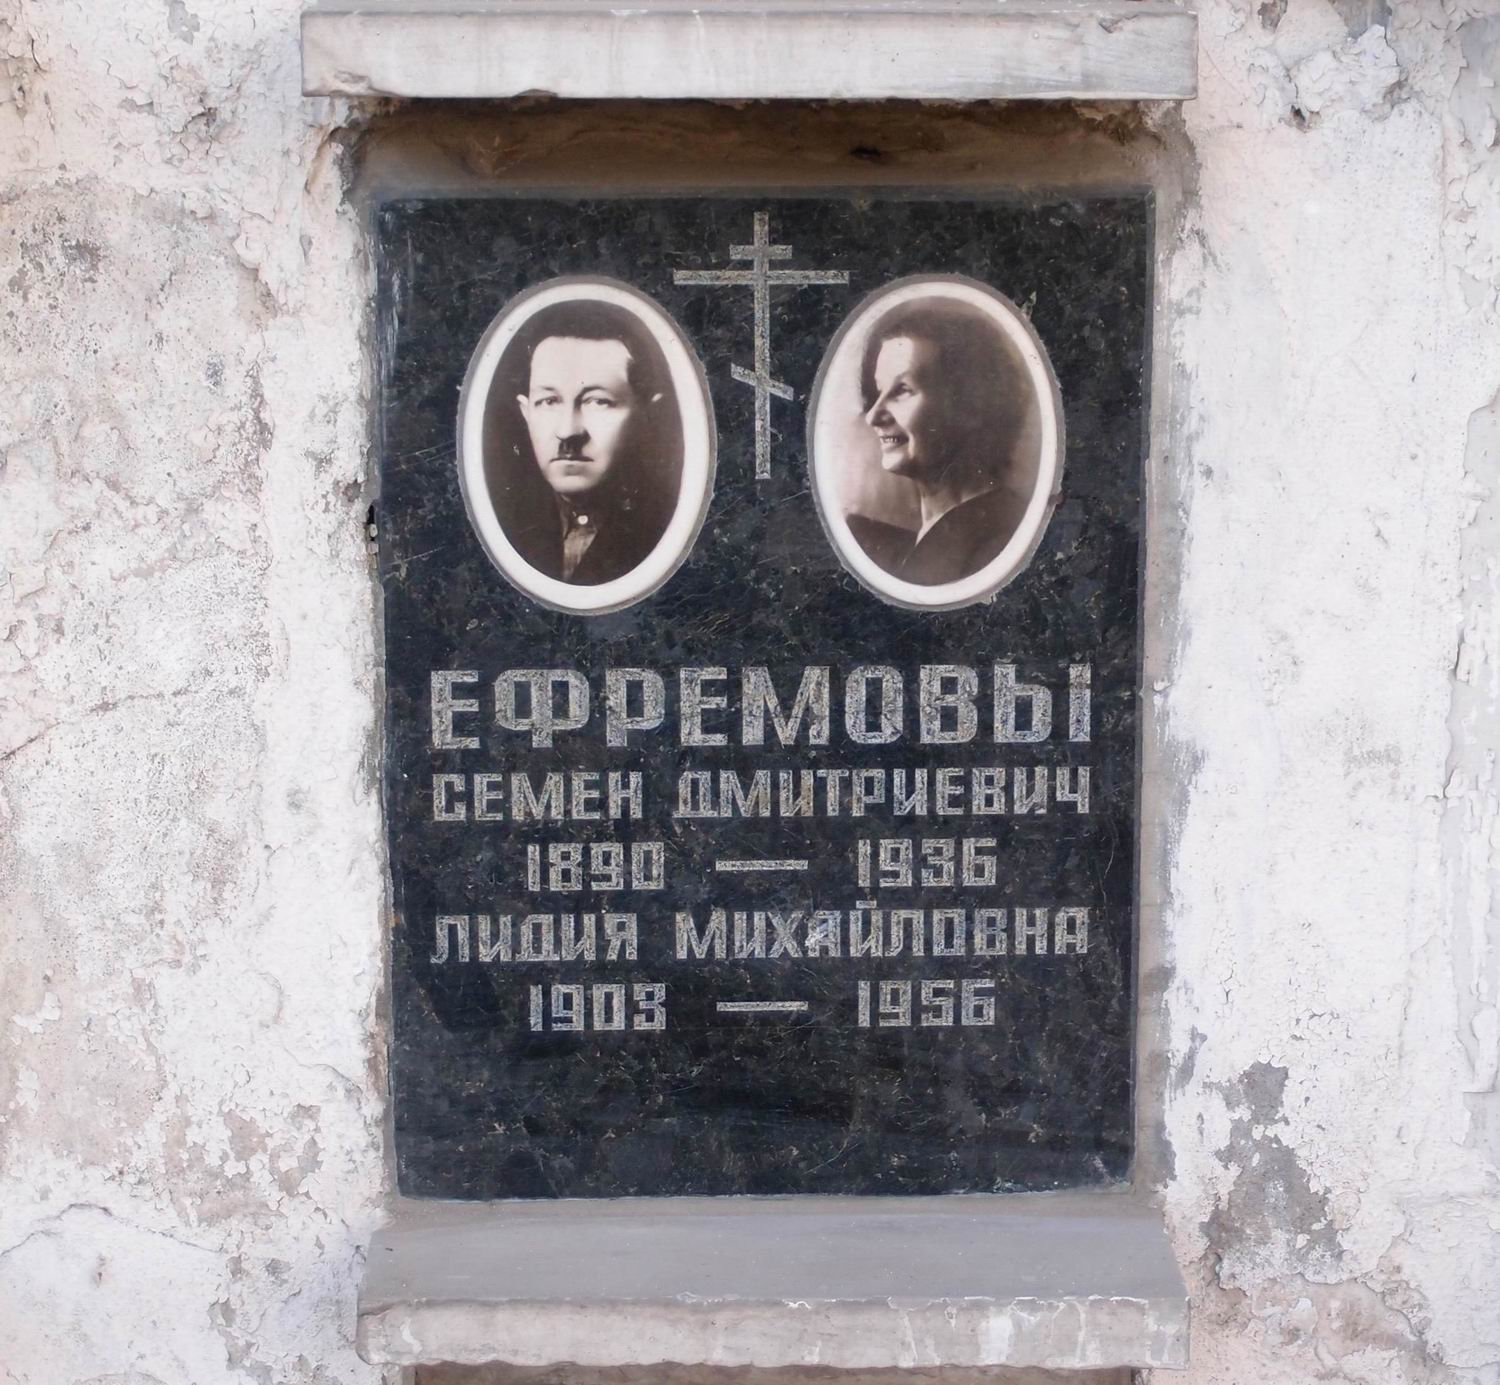 Плита на нише Ефремова С.Д. (1890-1936), на Новодевичьем кладбище (колумбарий [22]-4-3).